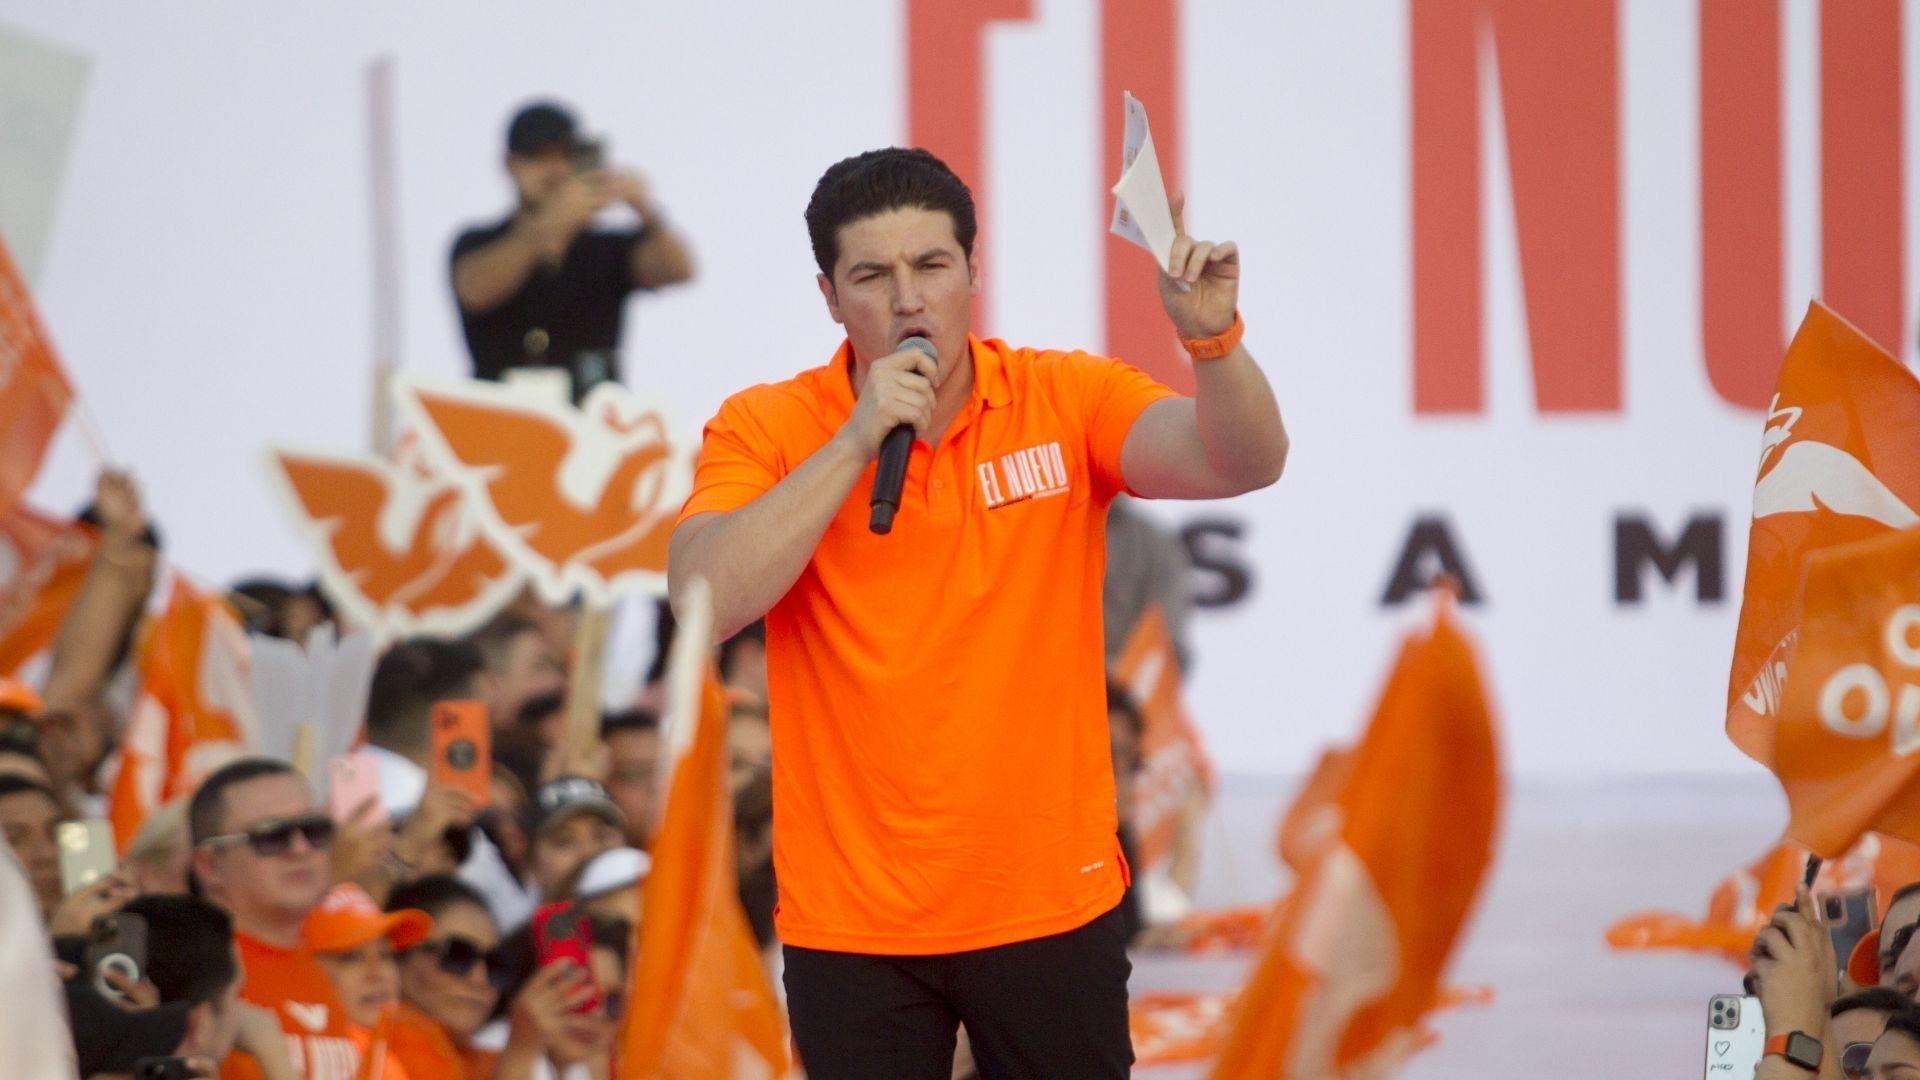 Licencia de Samuel García sigue vigente: Congreso de Nuevo León